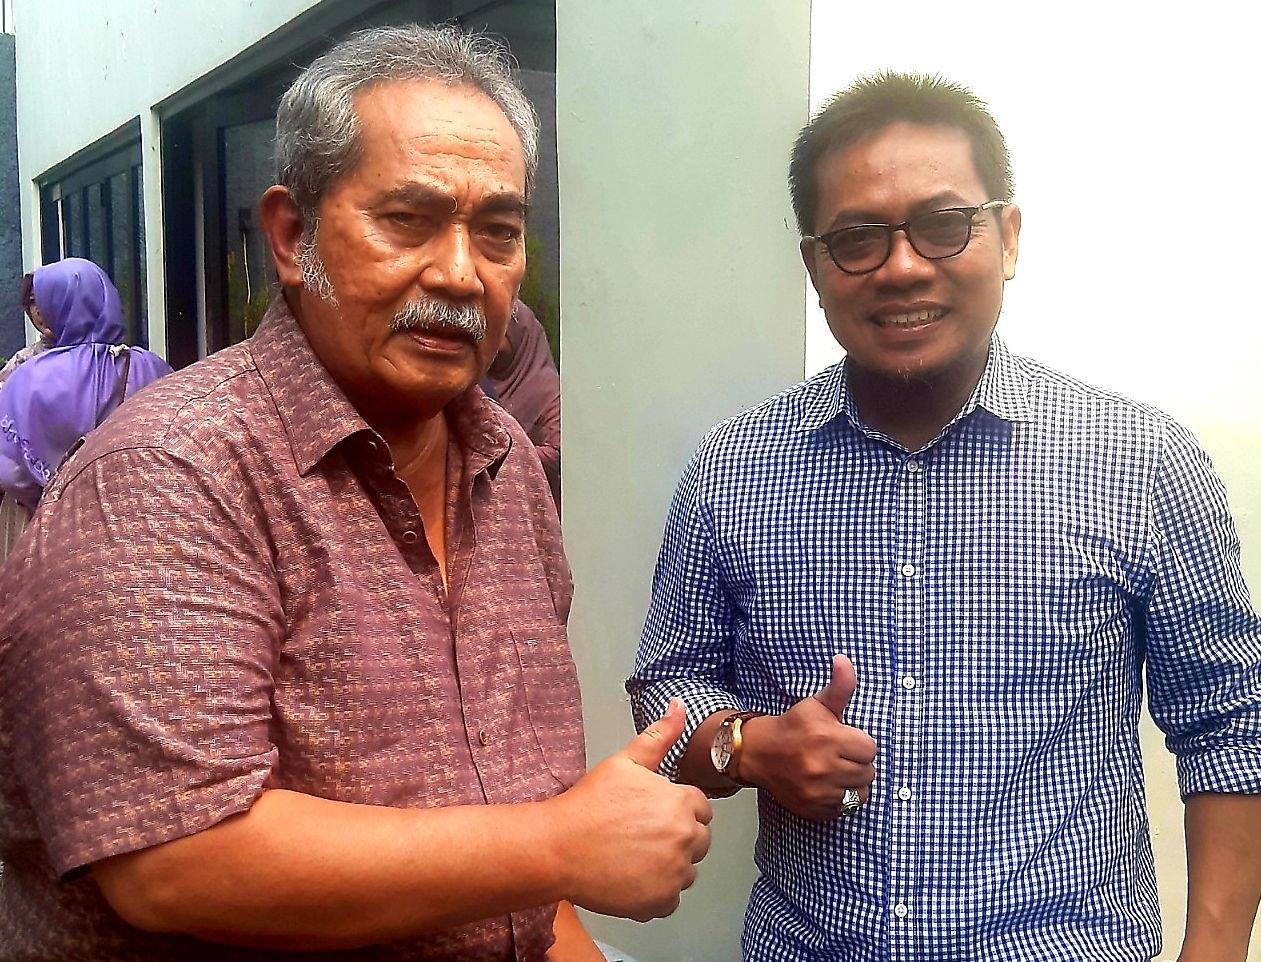 Wakil Wali Kota Banjar 2013-20218, H.Darmadji Prawirasetia (kiri) bersama Sulyanati (kanan) di sebuah RM Makan Kota Banjar baru-baru ini.